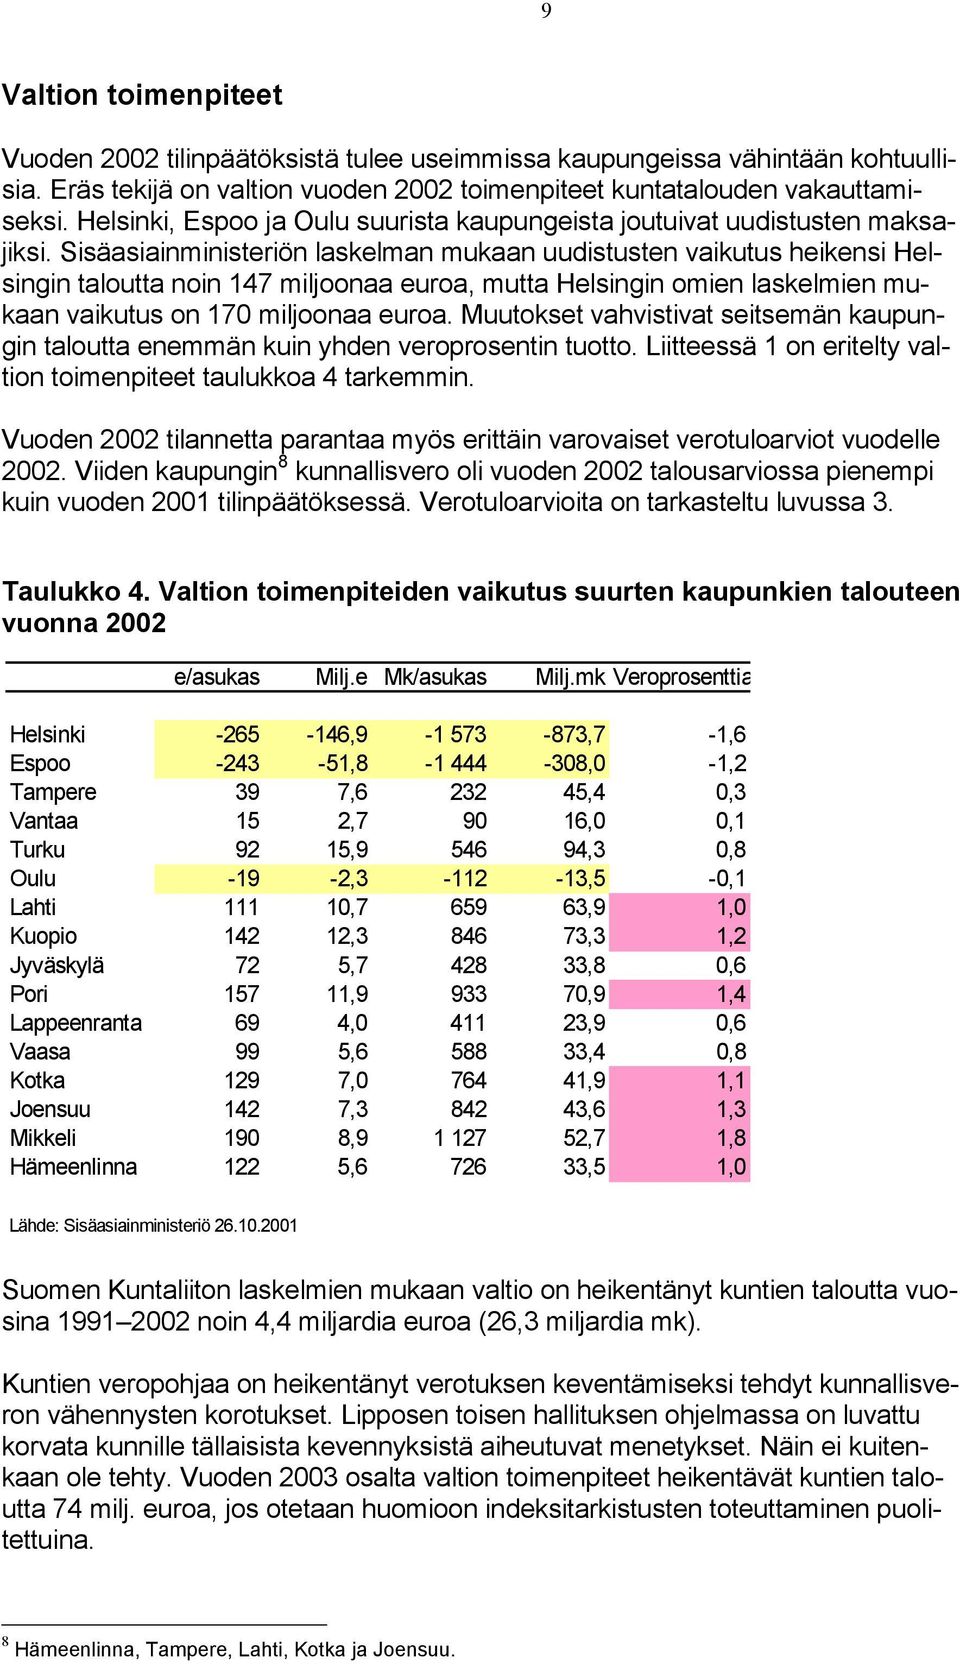 Sisäasiainministeriön laskelman mukaan uudistusten vaikutus heikensi Helsingin taloutta noin 147 miljoonaa euroa, mutta Helsingin omien laskelmien mukaan vaikutus on 170 miljoonaa euroa.